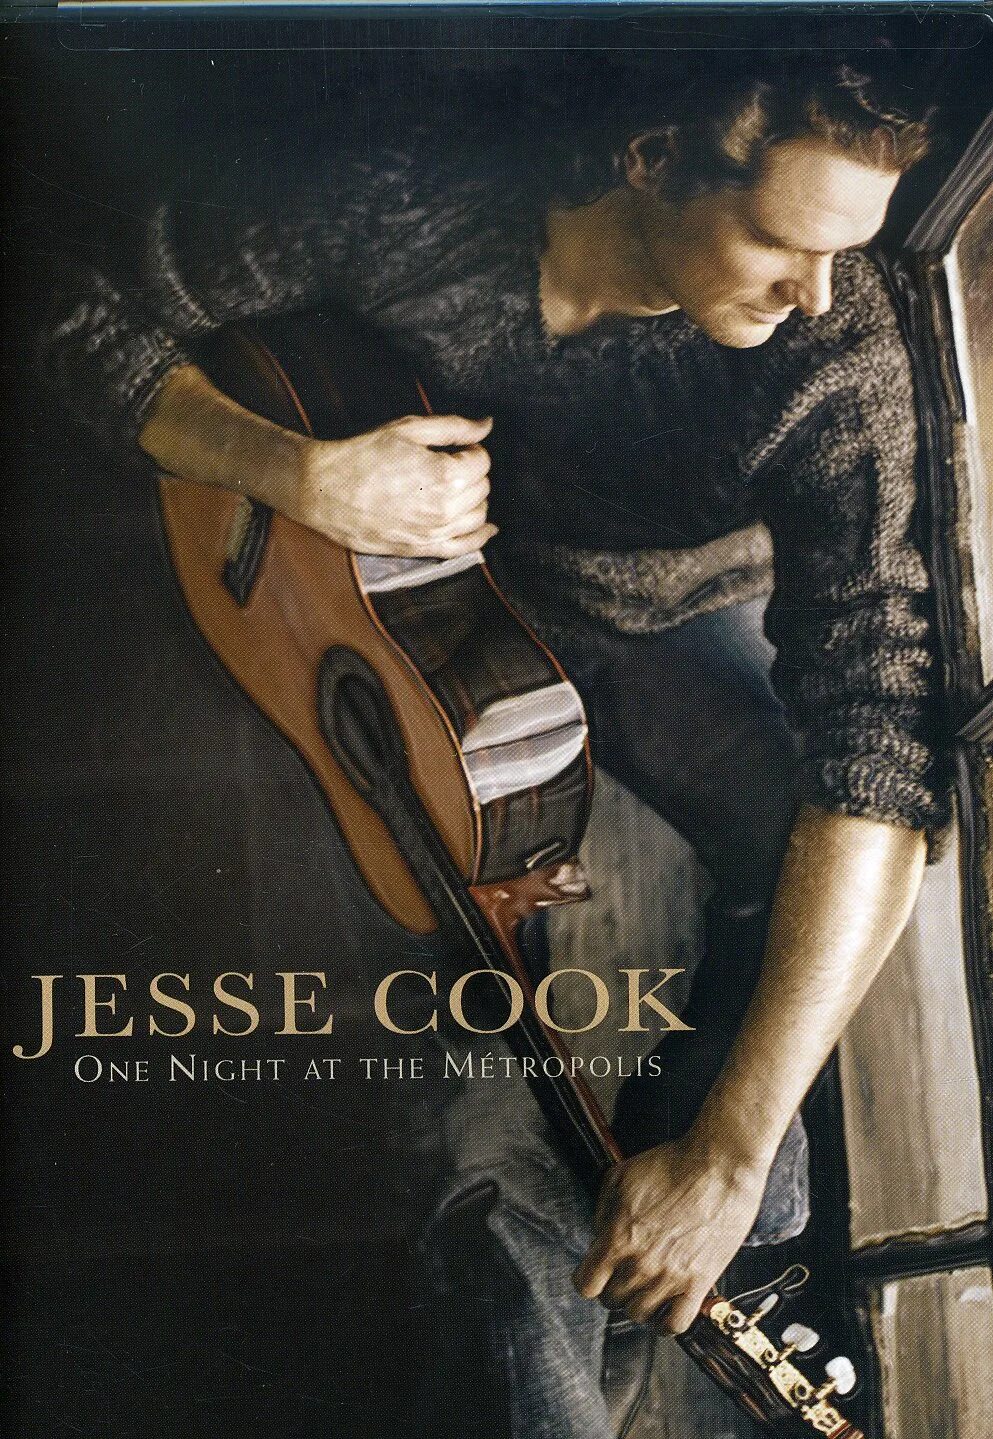 Джесси Кук. One Night at the Metropolis Jesse Cook. Jesse Cook - 2005 - the Ultimate. Jesse Cook Nomad. Jesse cook